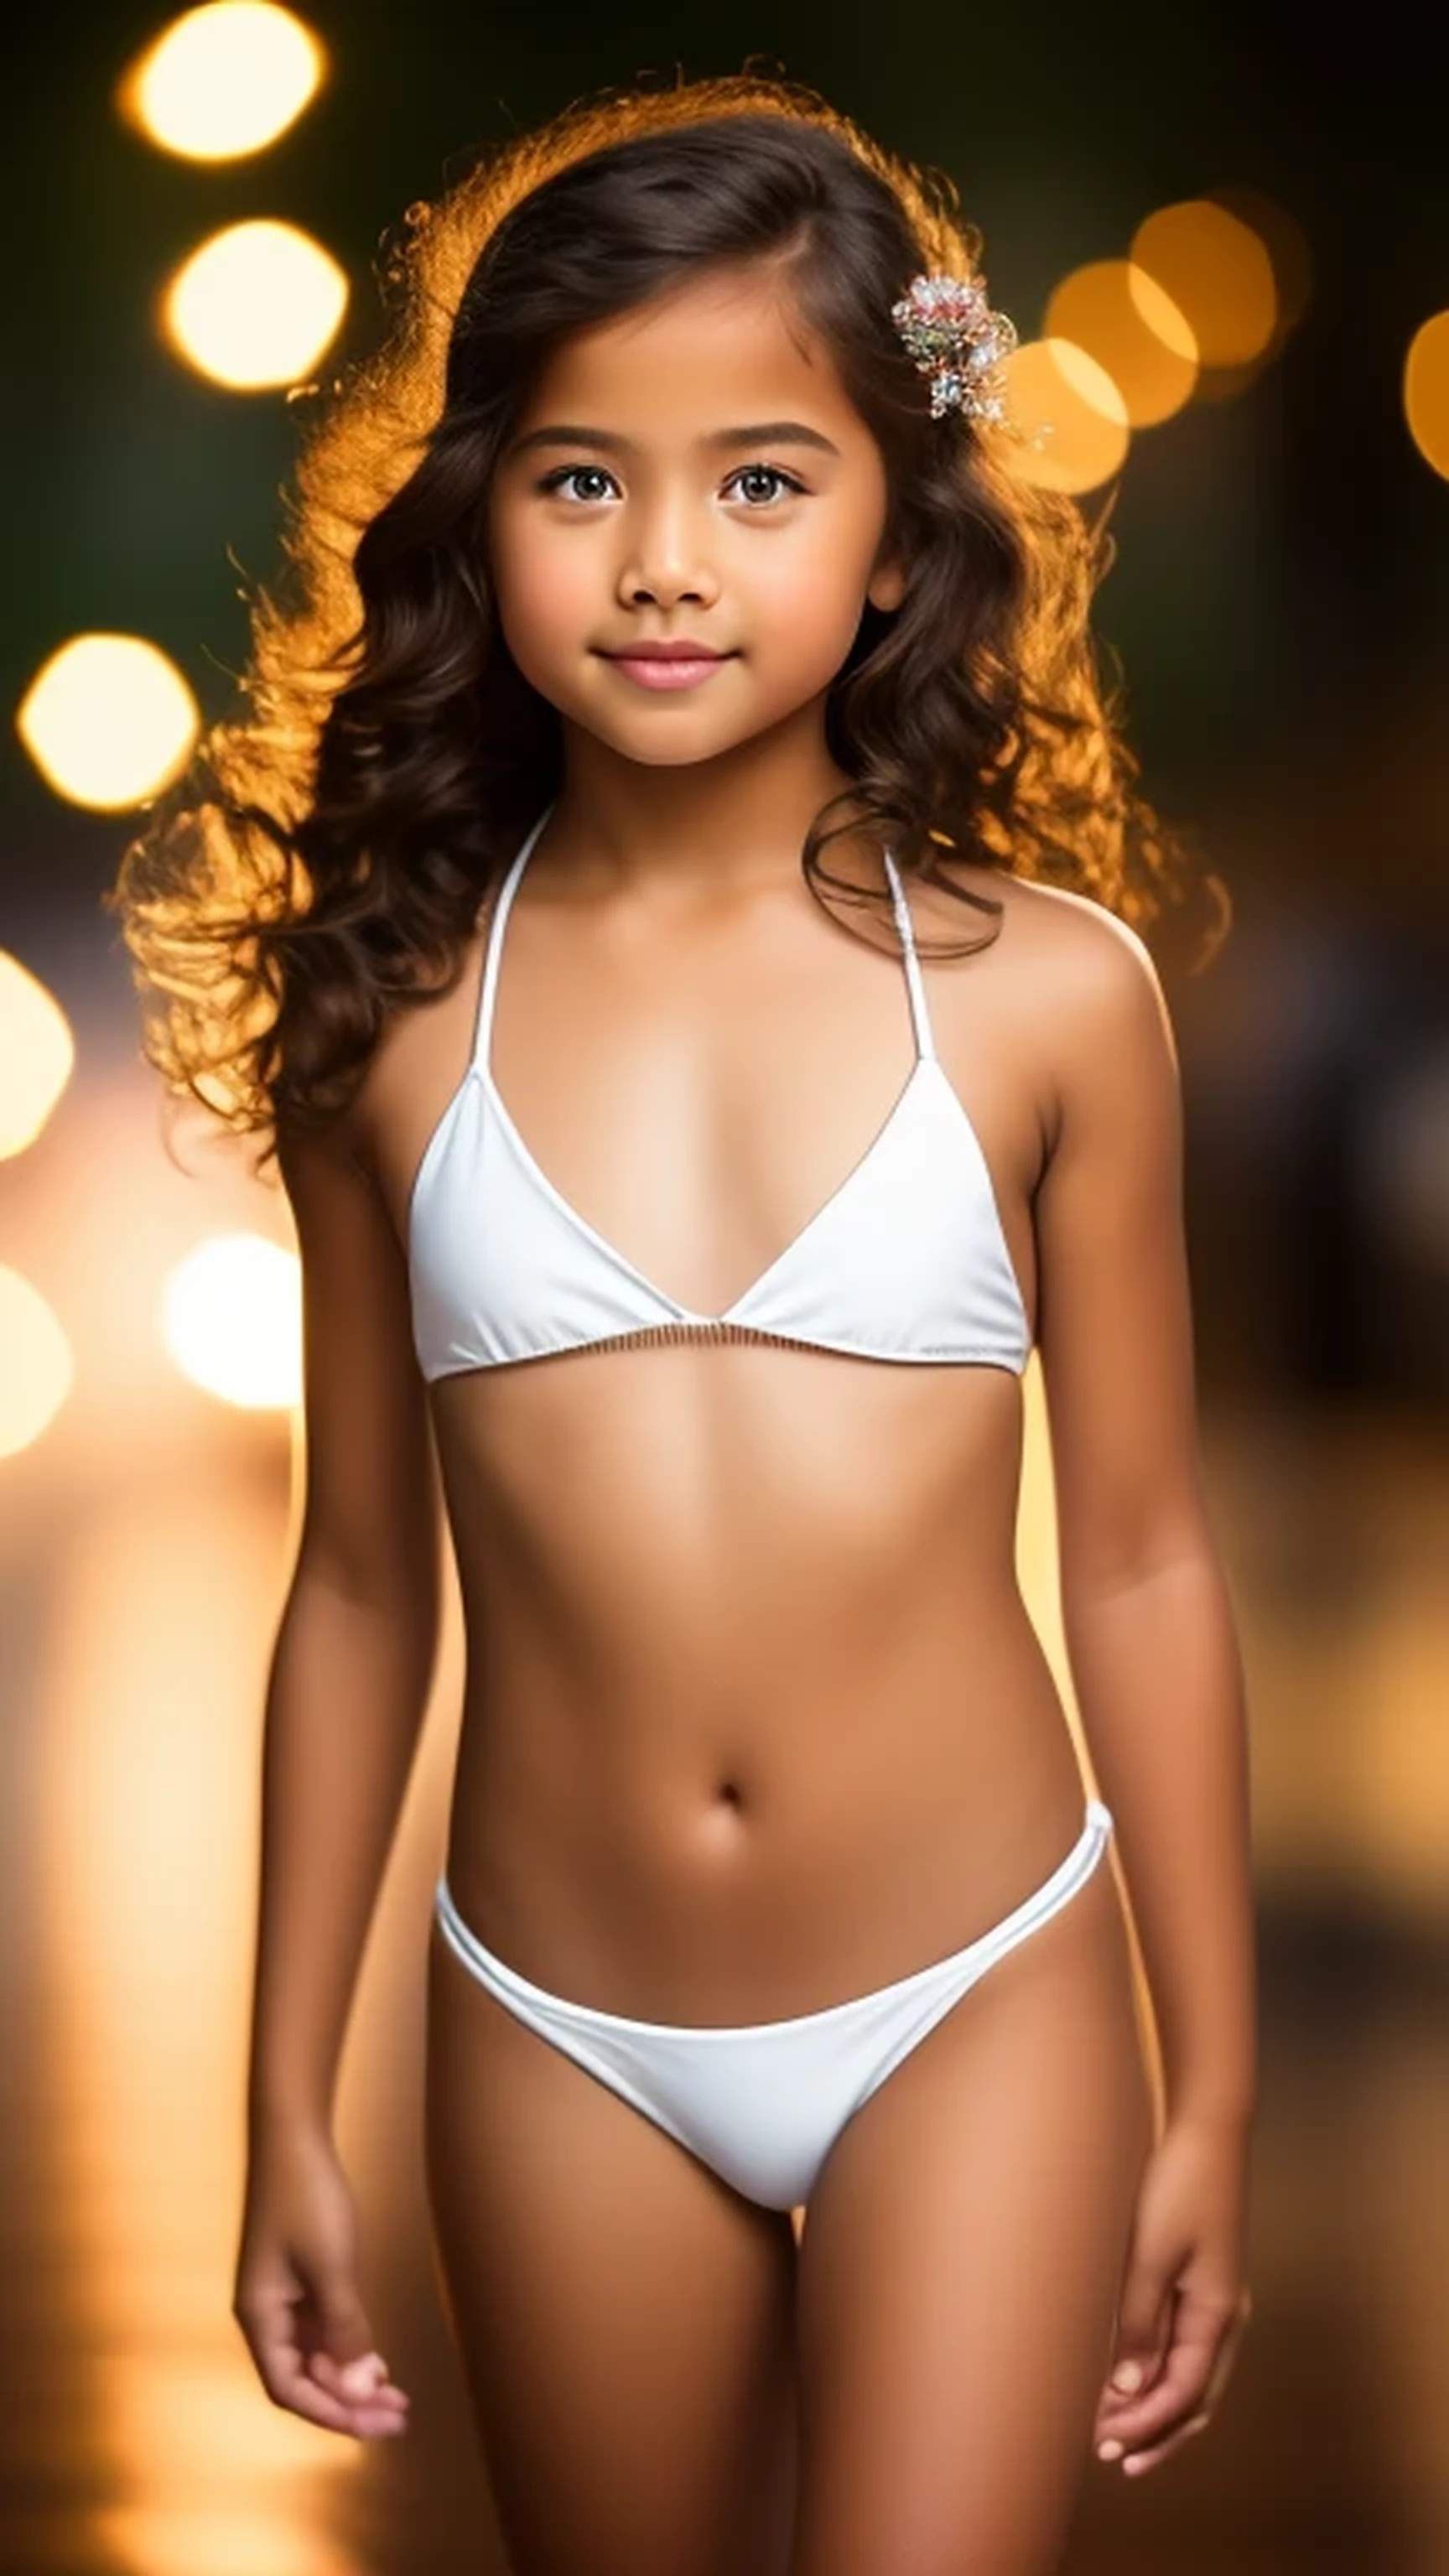 1. Bikini, 10-years-old girl, standing o...